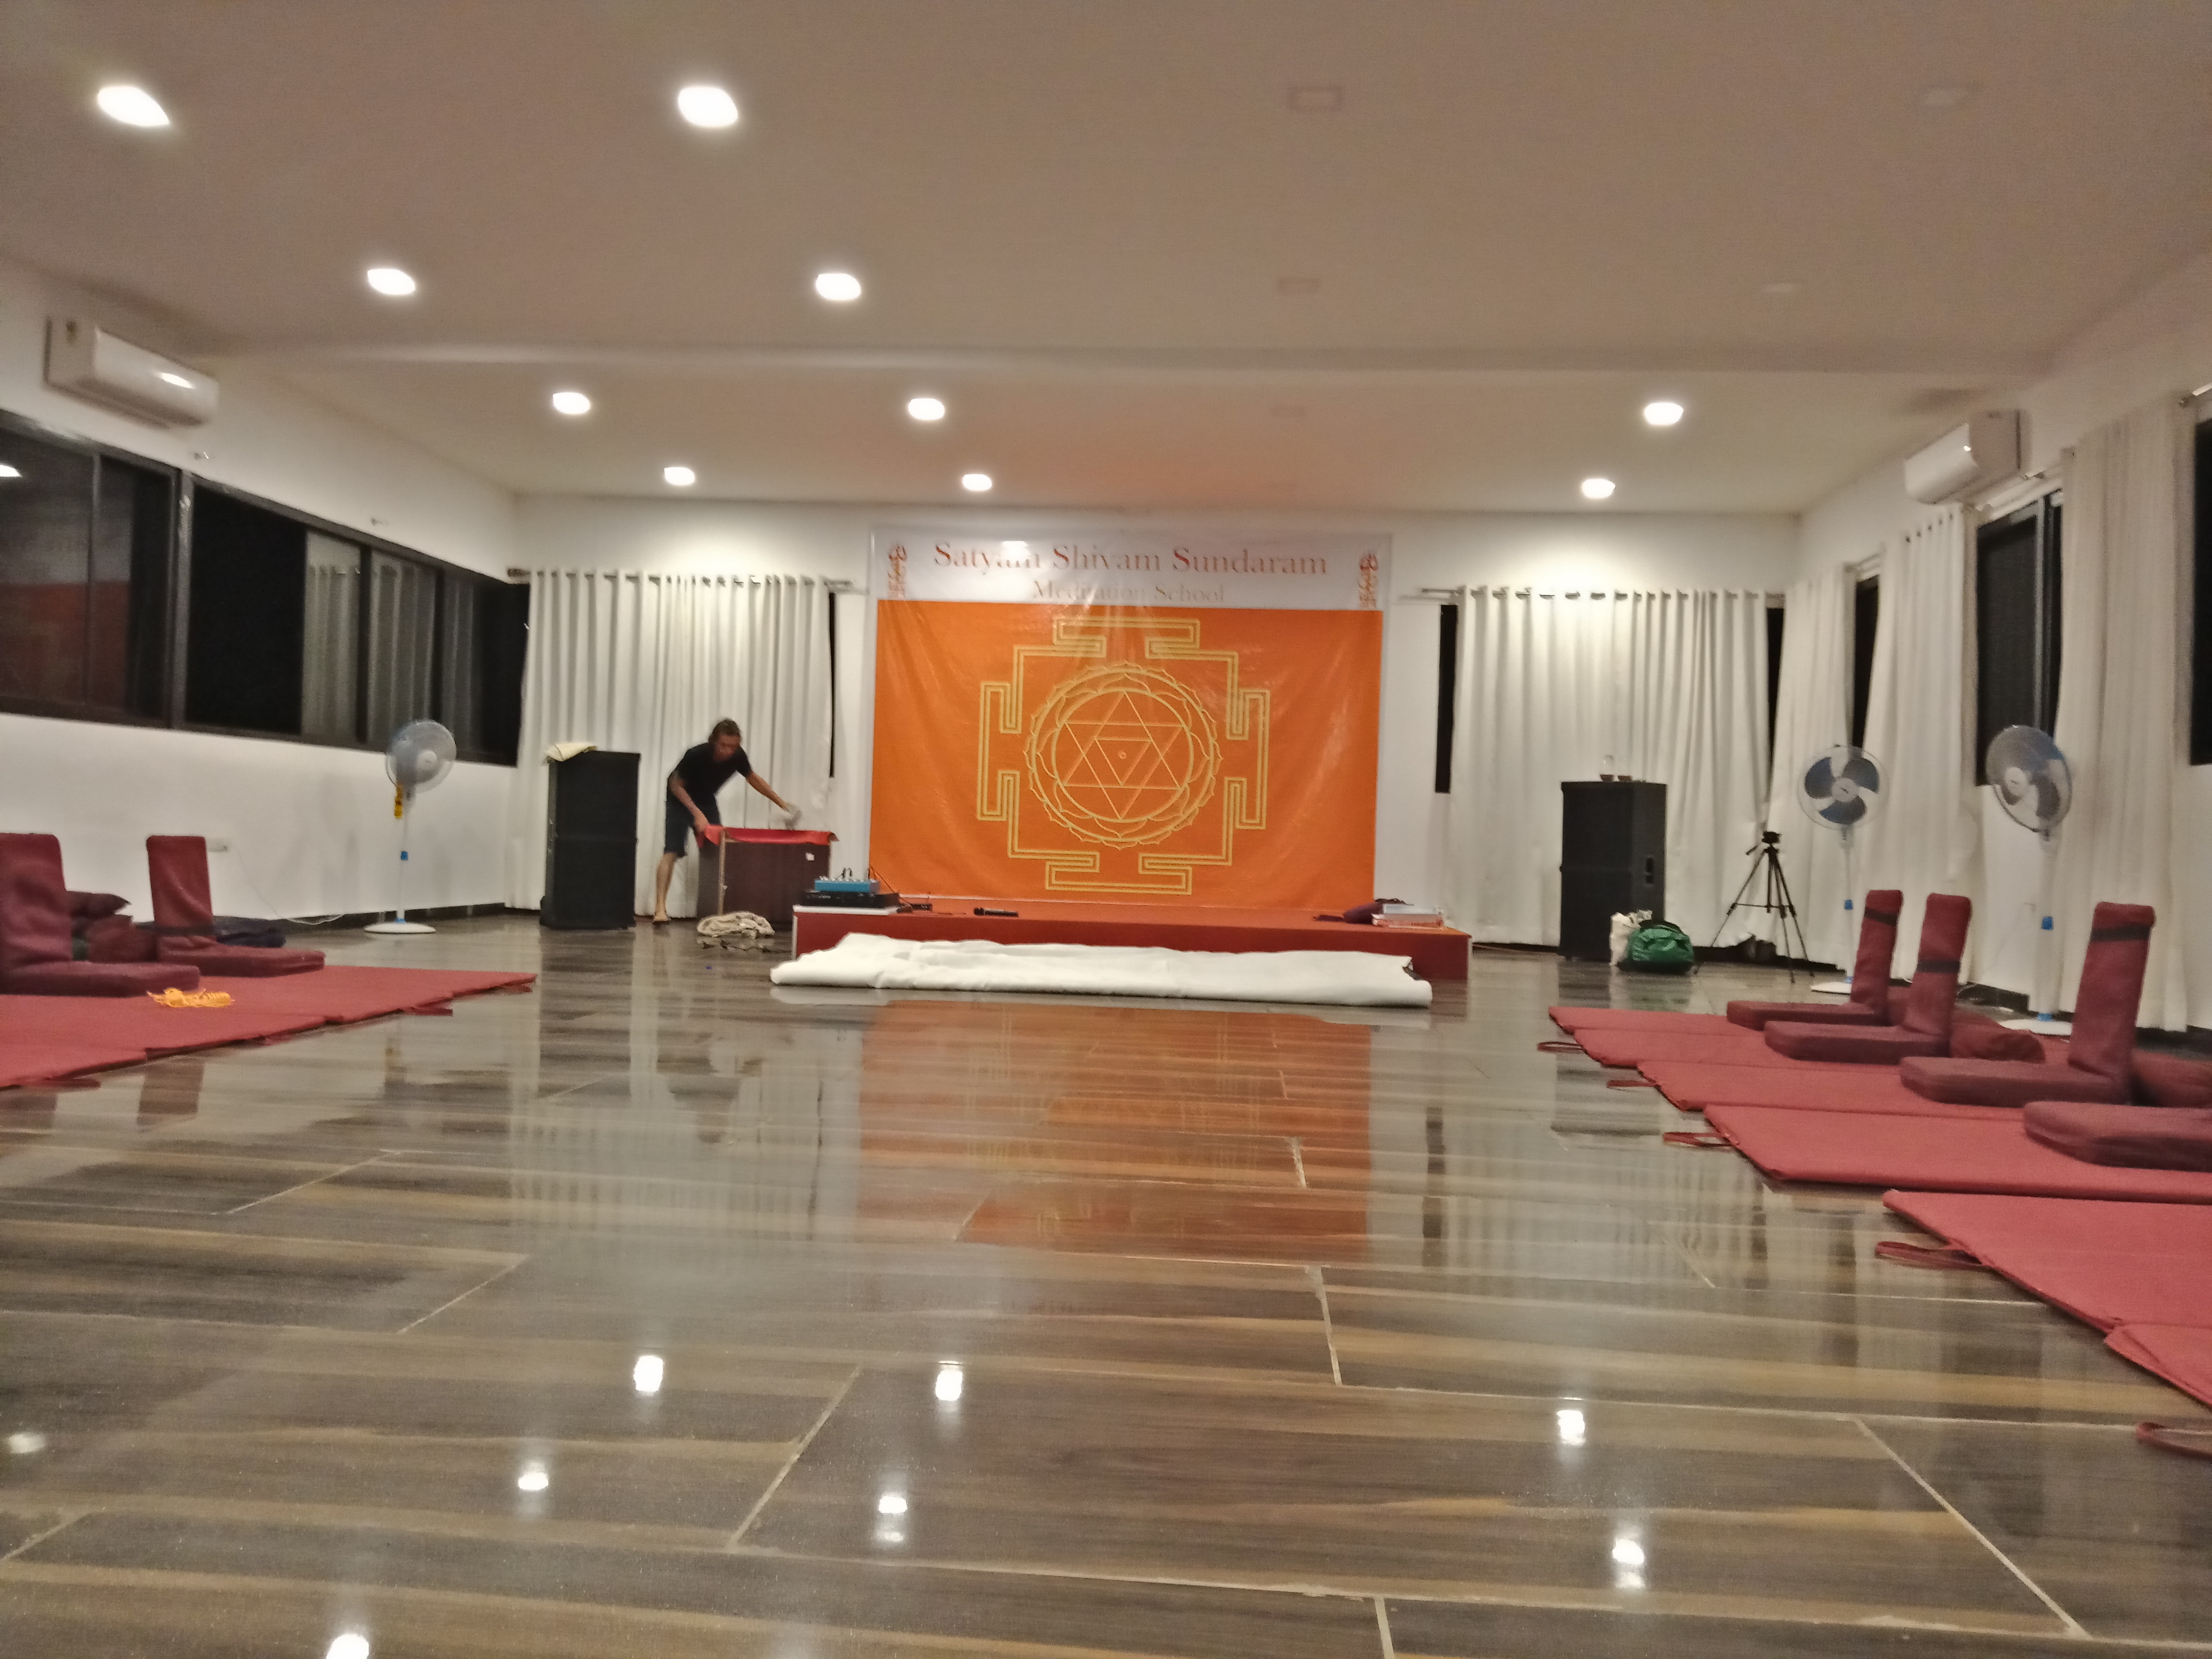 Satyam Shivam Sundaram Meditation Hall 5